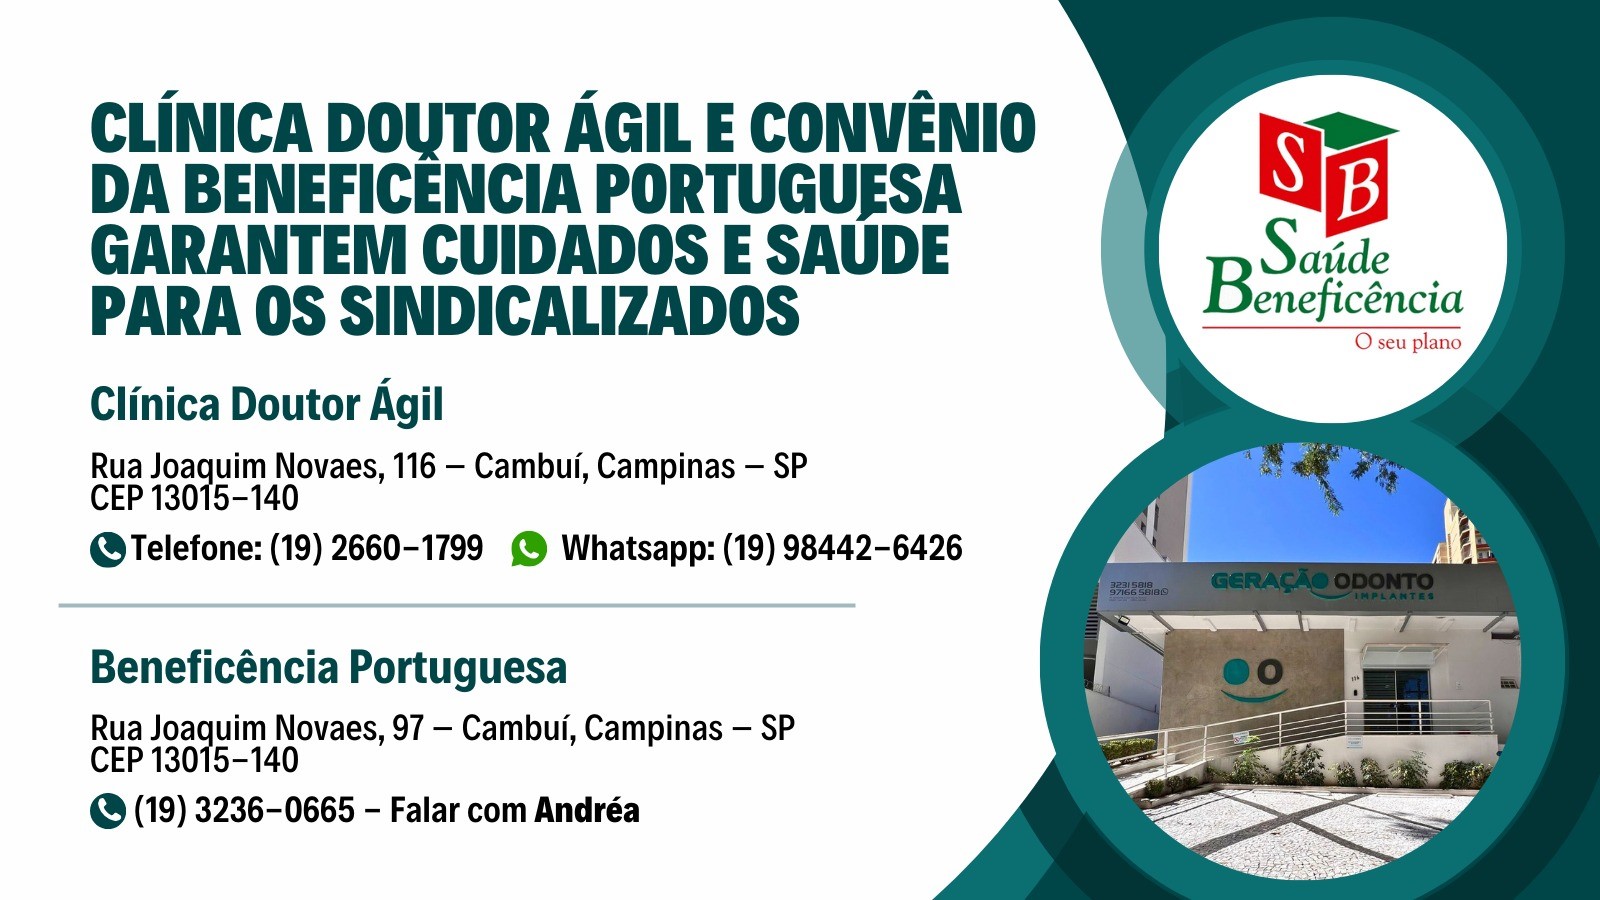 STMC oferece convênio médico com a Beneficência Portuguesa  e também tem a Clínica Doutor Ágil. Seja um sindicalizado/a!